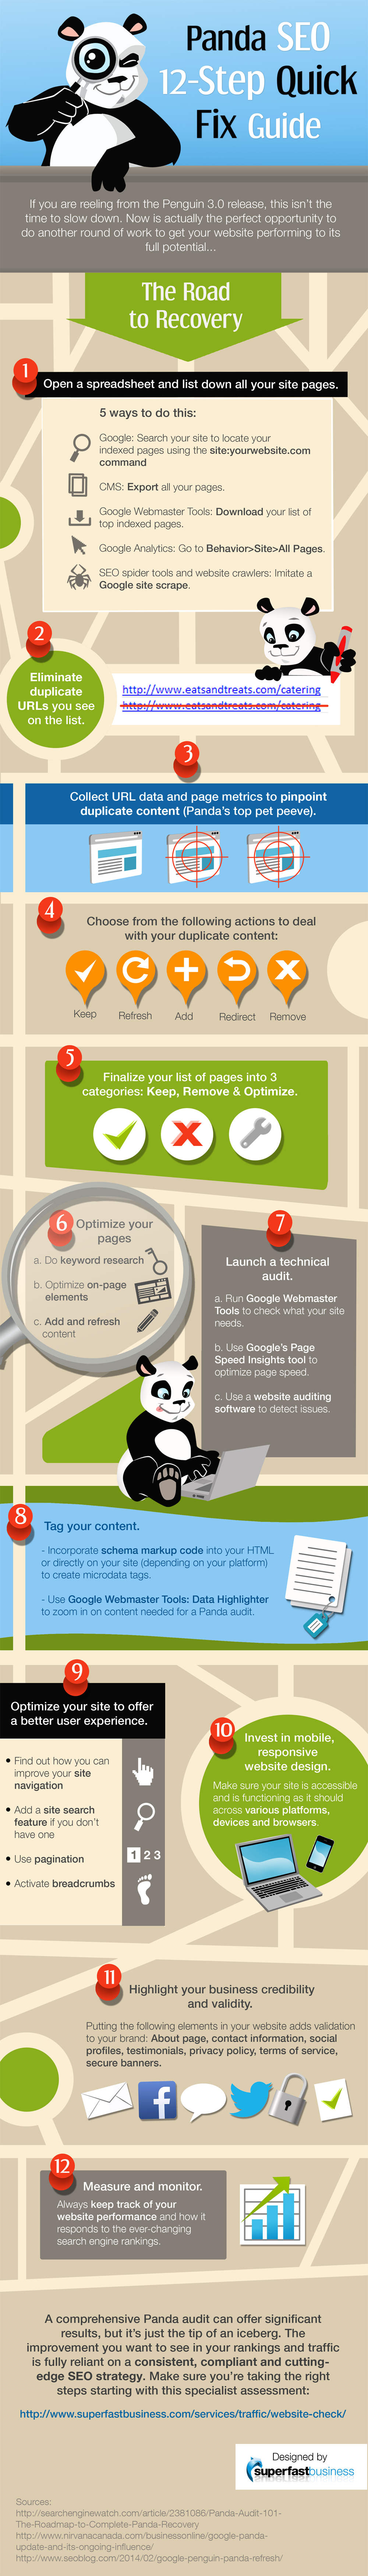 Panda SEO 12-Step Quick Fix Guide